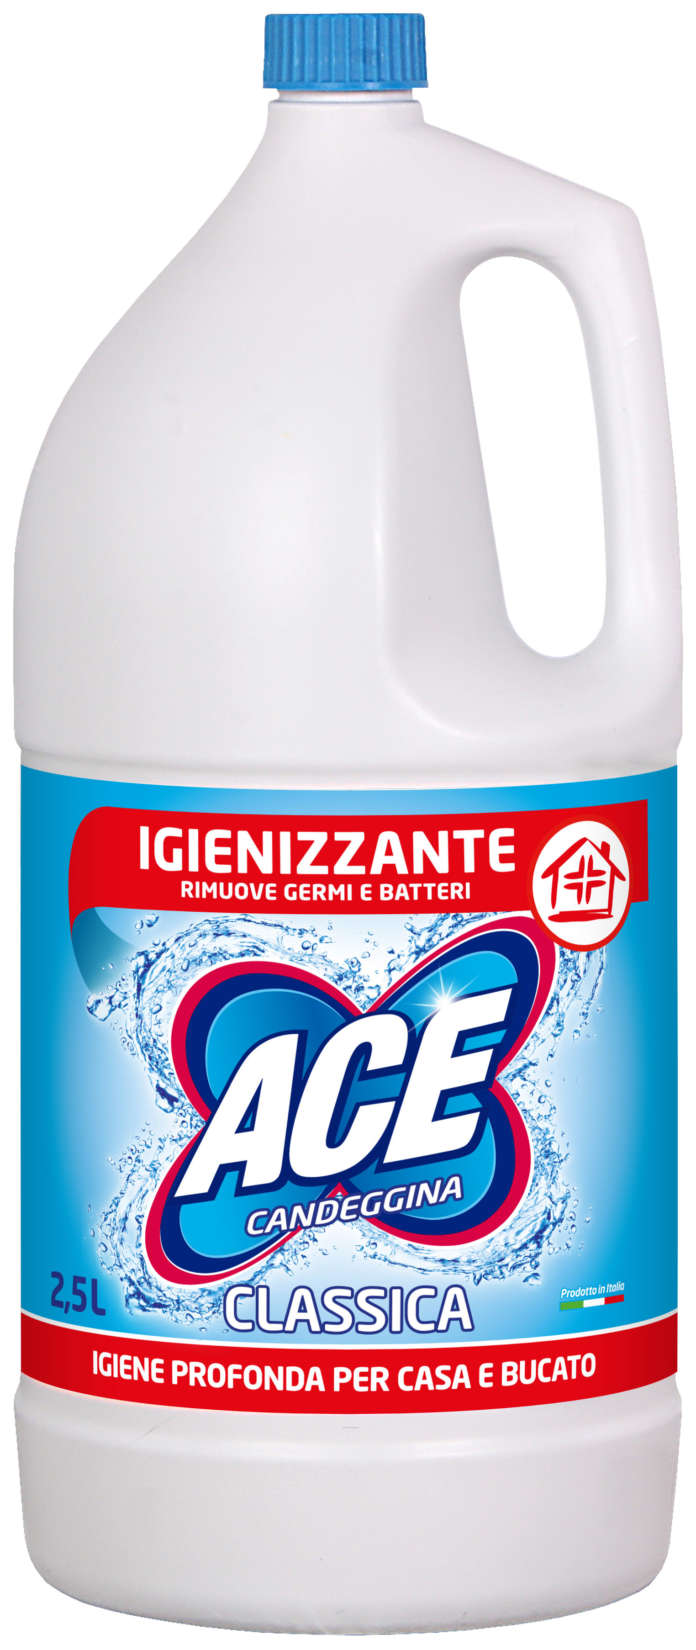 Ace Candeggina Classica Igienizzante